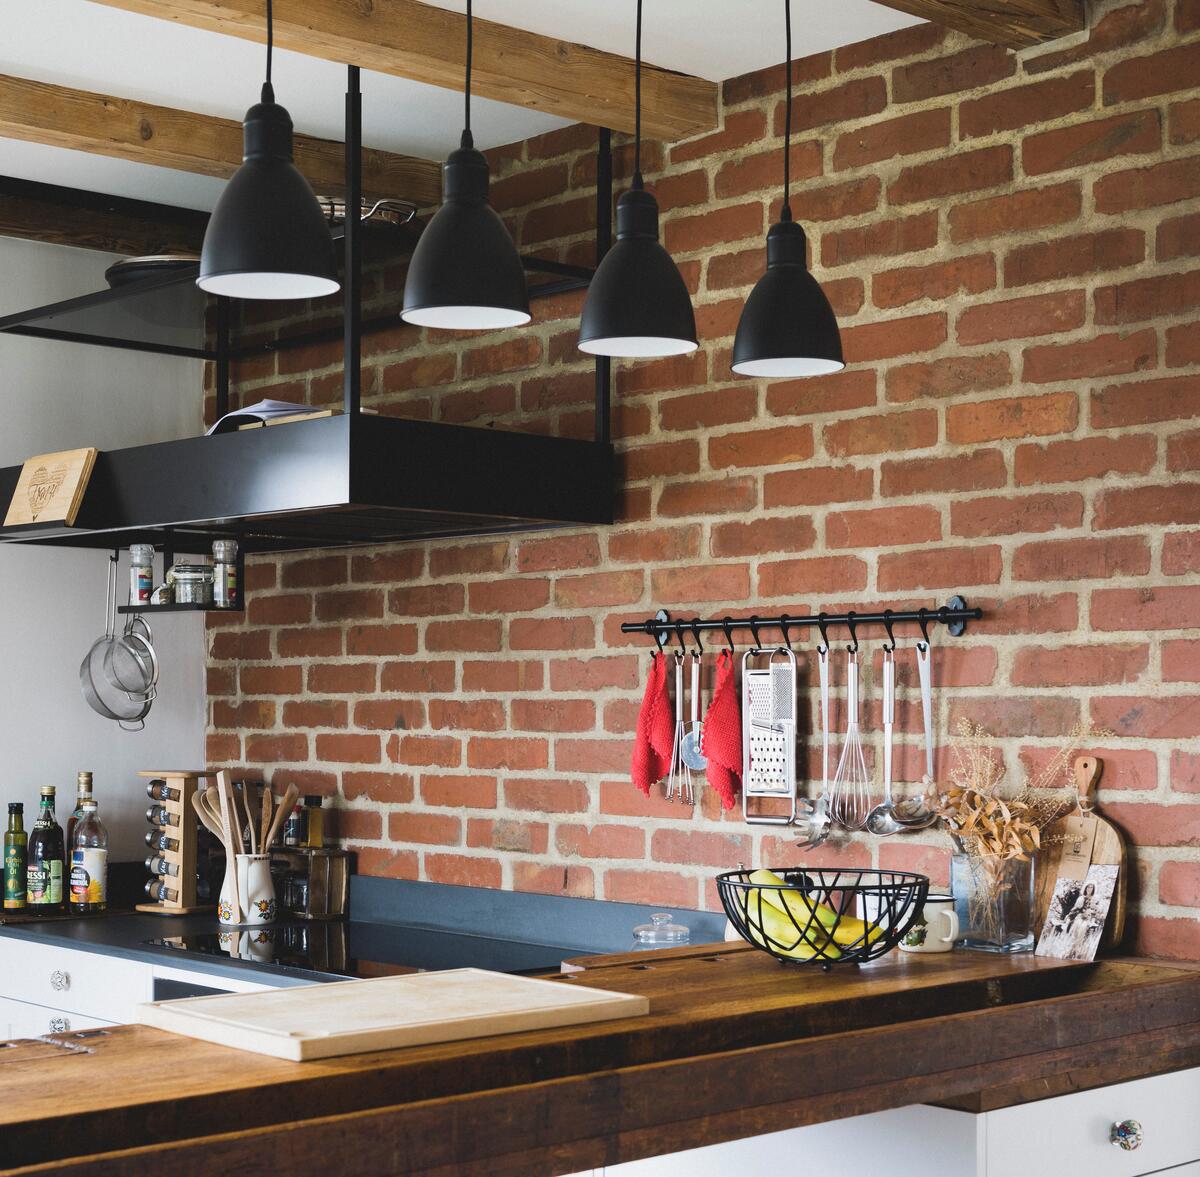 Bild vergrößern: Küche mit Ziegelwand. An der Wand hängt eine schwarze Dunstabzugshaube. Die Küchenzeile ist aus Altholz.